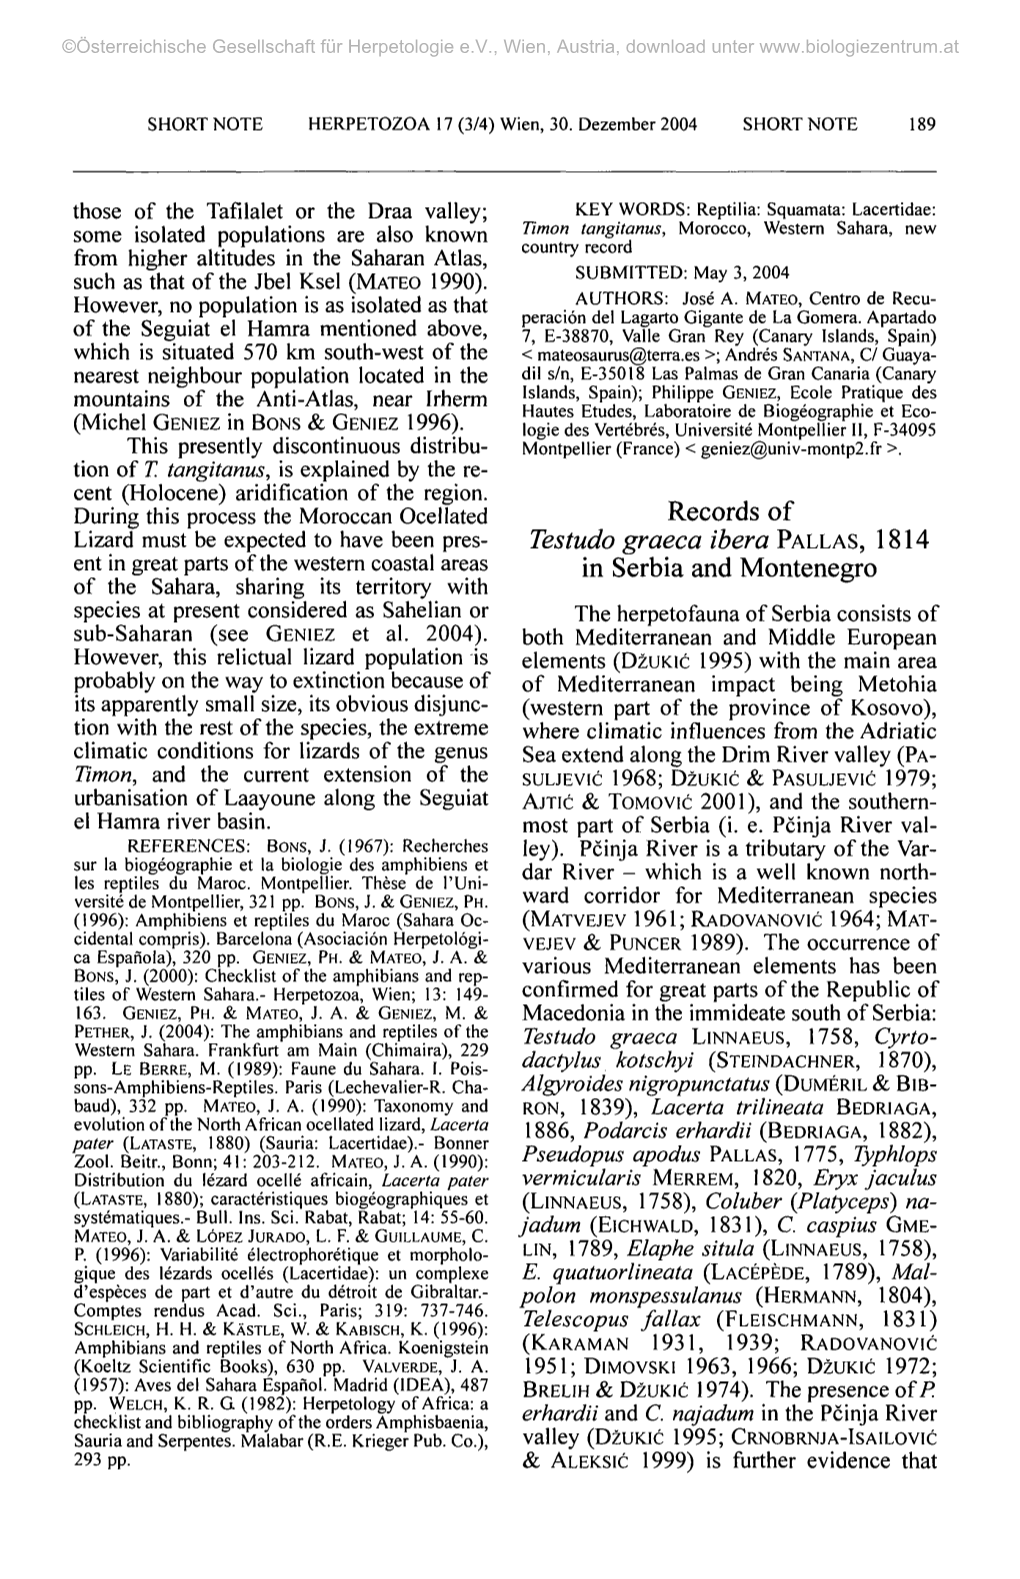 Records of Testudo Graeca Ibera PALLAS, 1814 in Serbia And